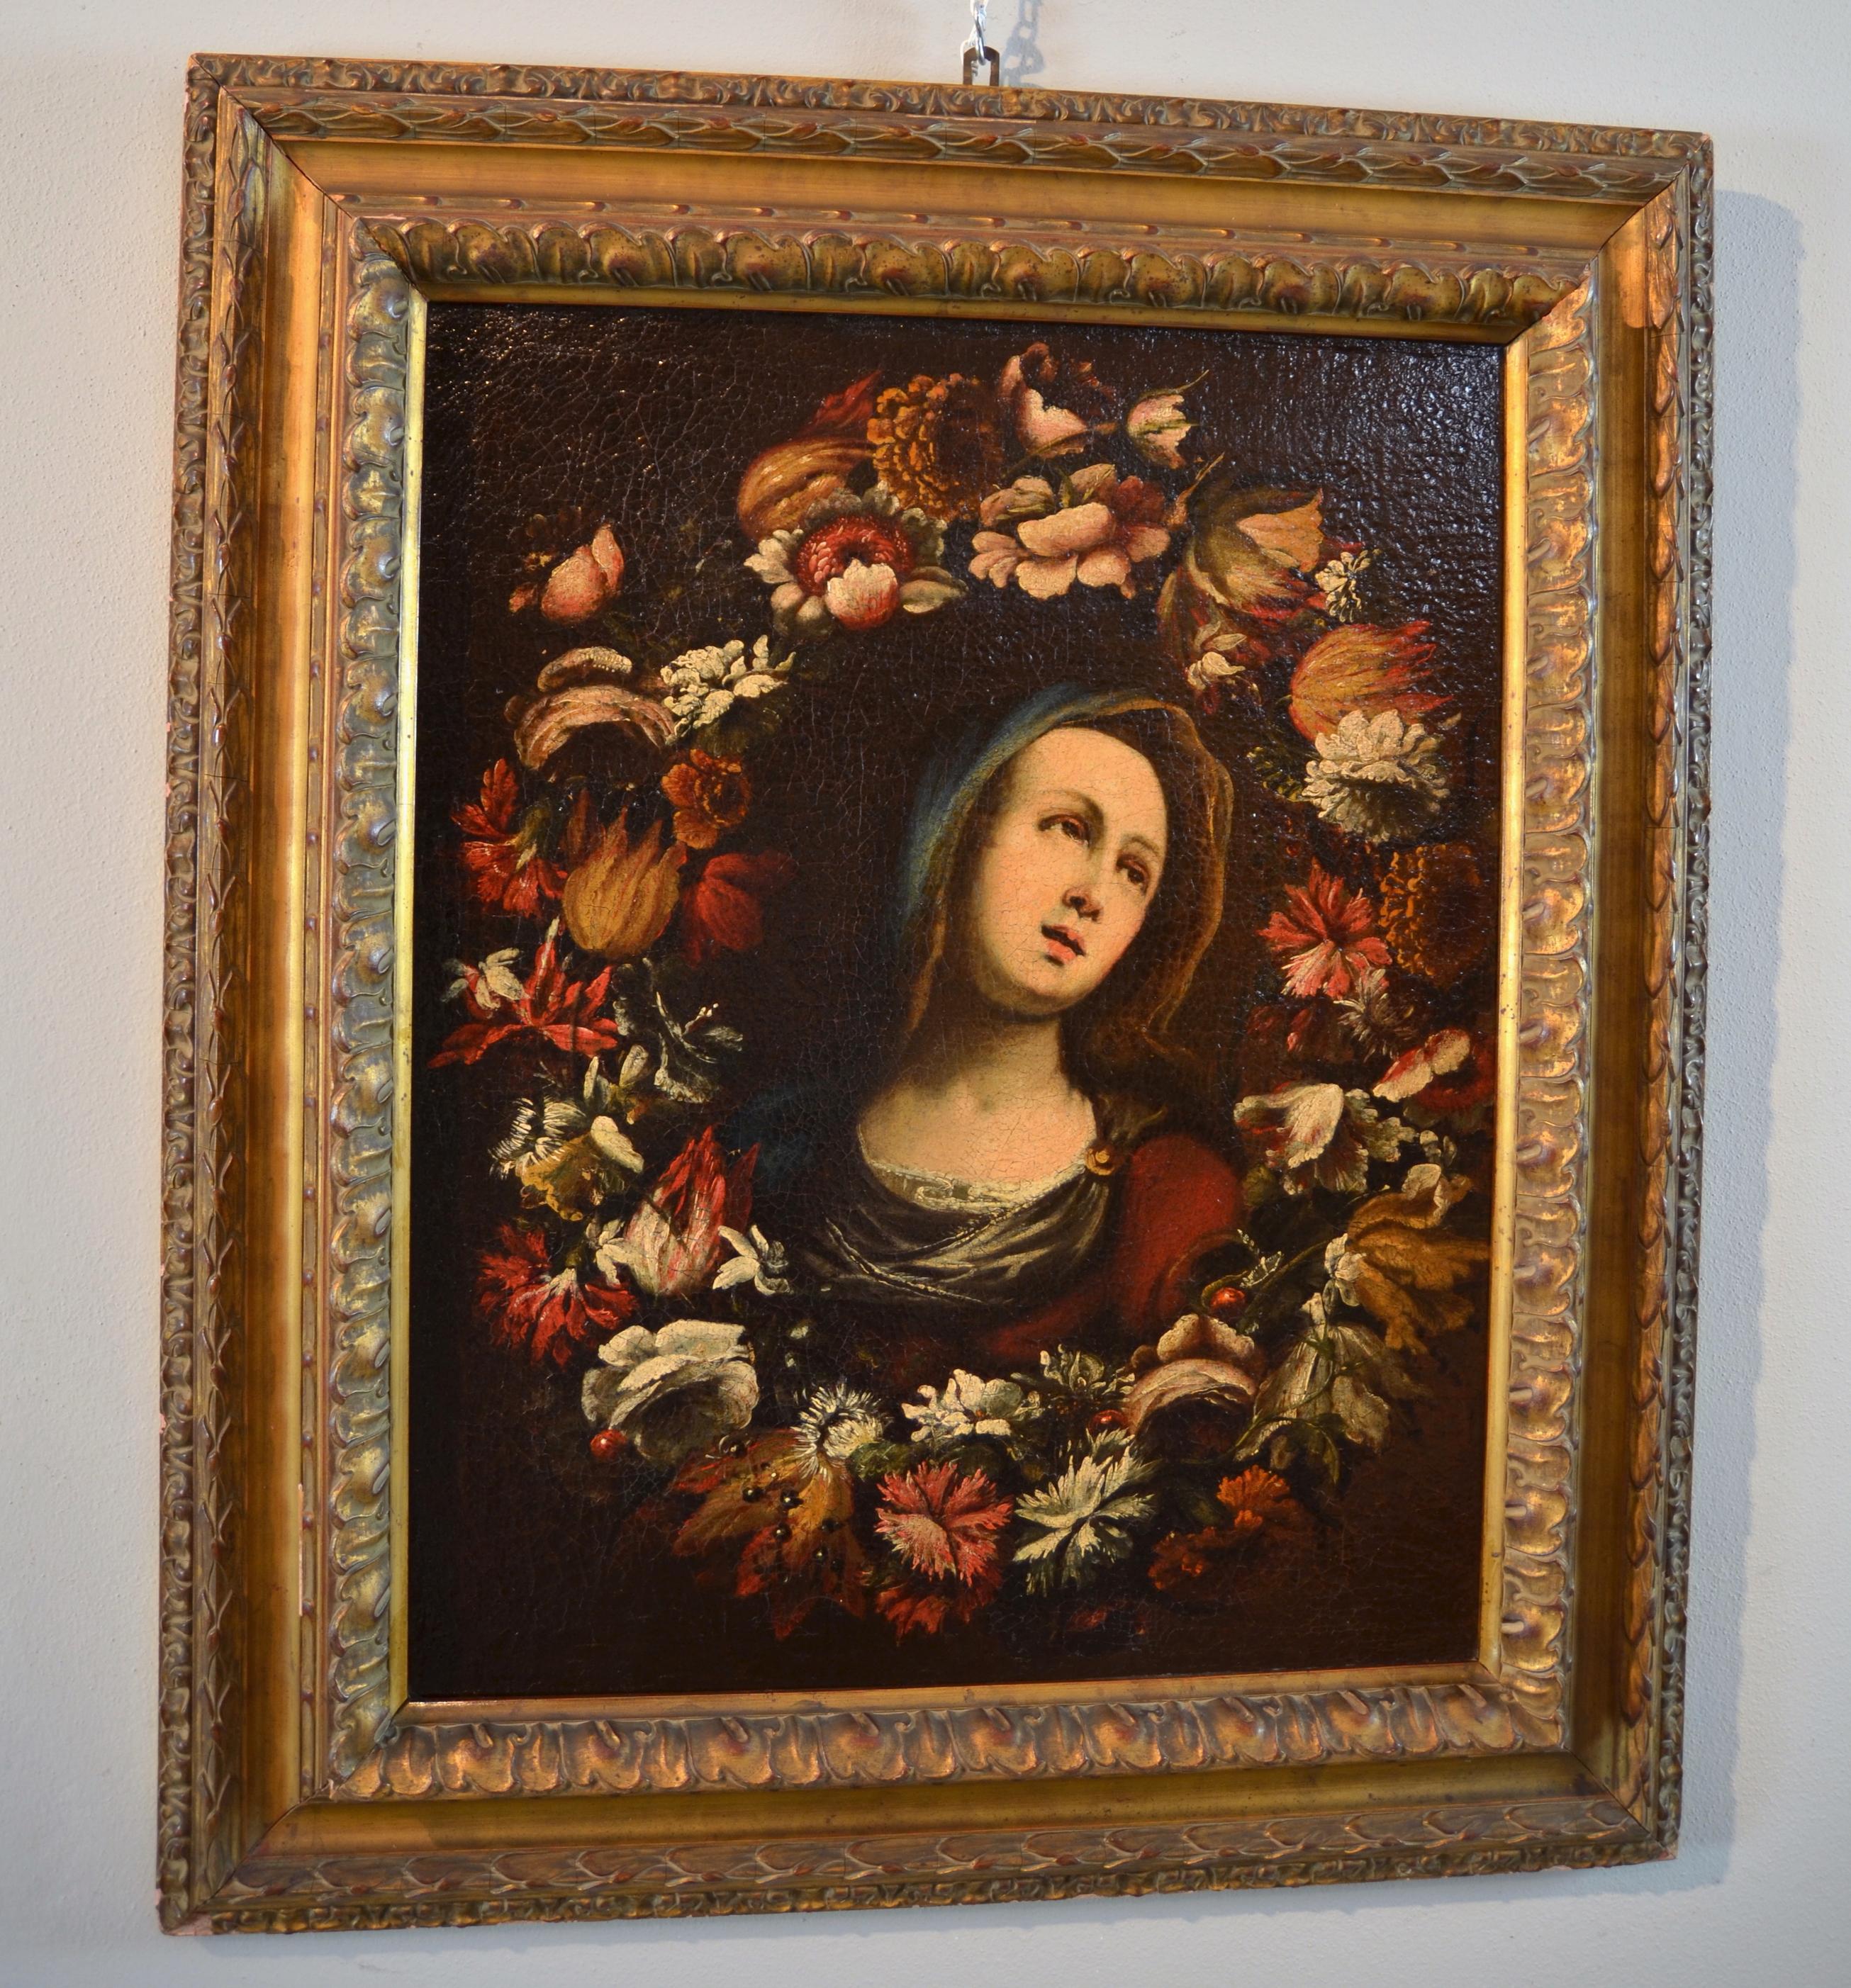 Blumengirland, Schurfarbe Öl auf Leinwand, alter Meister, 17. Jahrhundert, Italien (Alte Meister), Painting, von Giovanni Stanchi